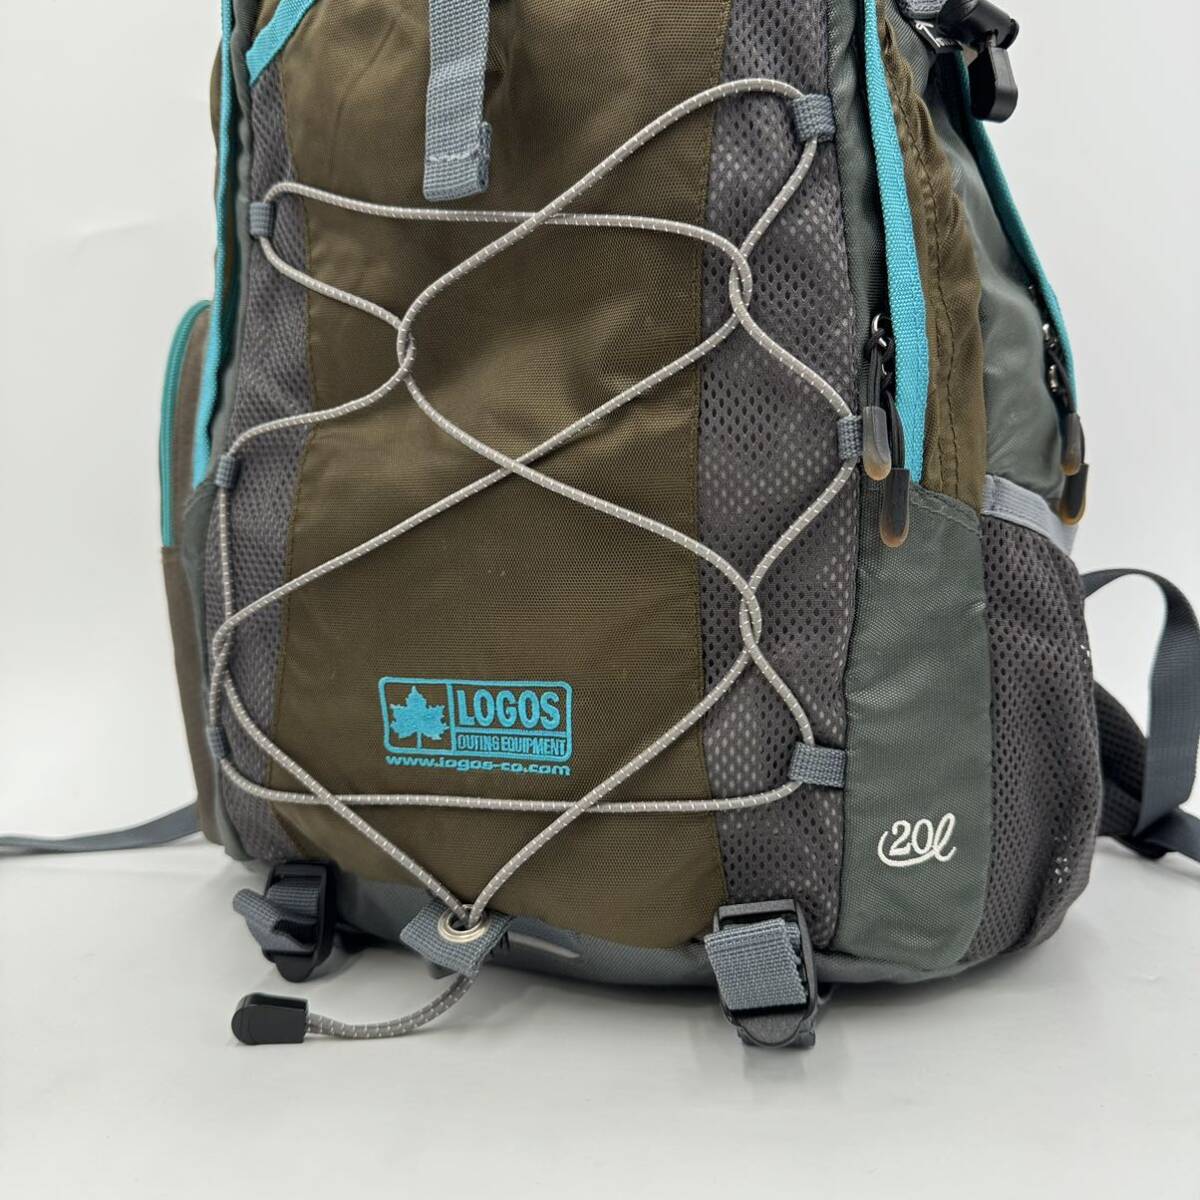 ☆ 人気モデル!! '都会のアウトドアバッグ' LOGOS ロゴス 20L COOL リュックサック バックパック 鞄 デイパック トレッキング 登山 メンズの画像3